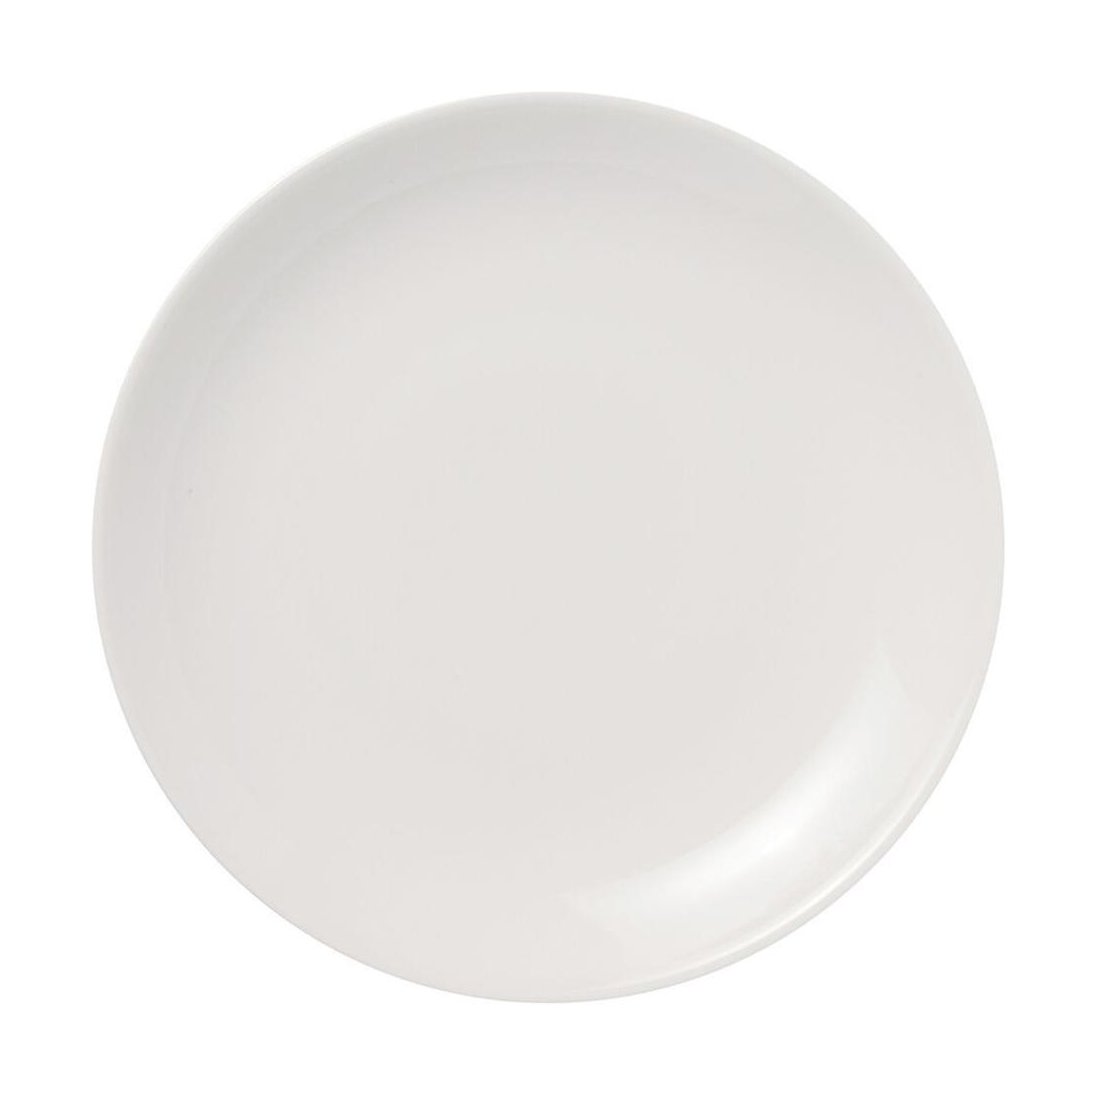 Arabia 24 H Plate 26 Cm, White